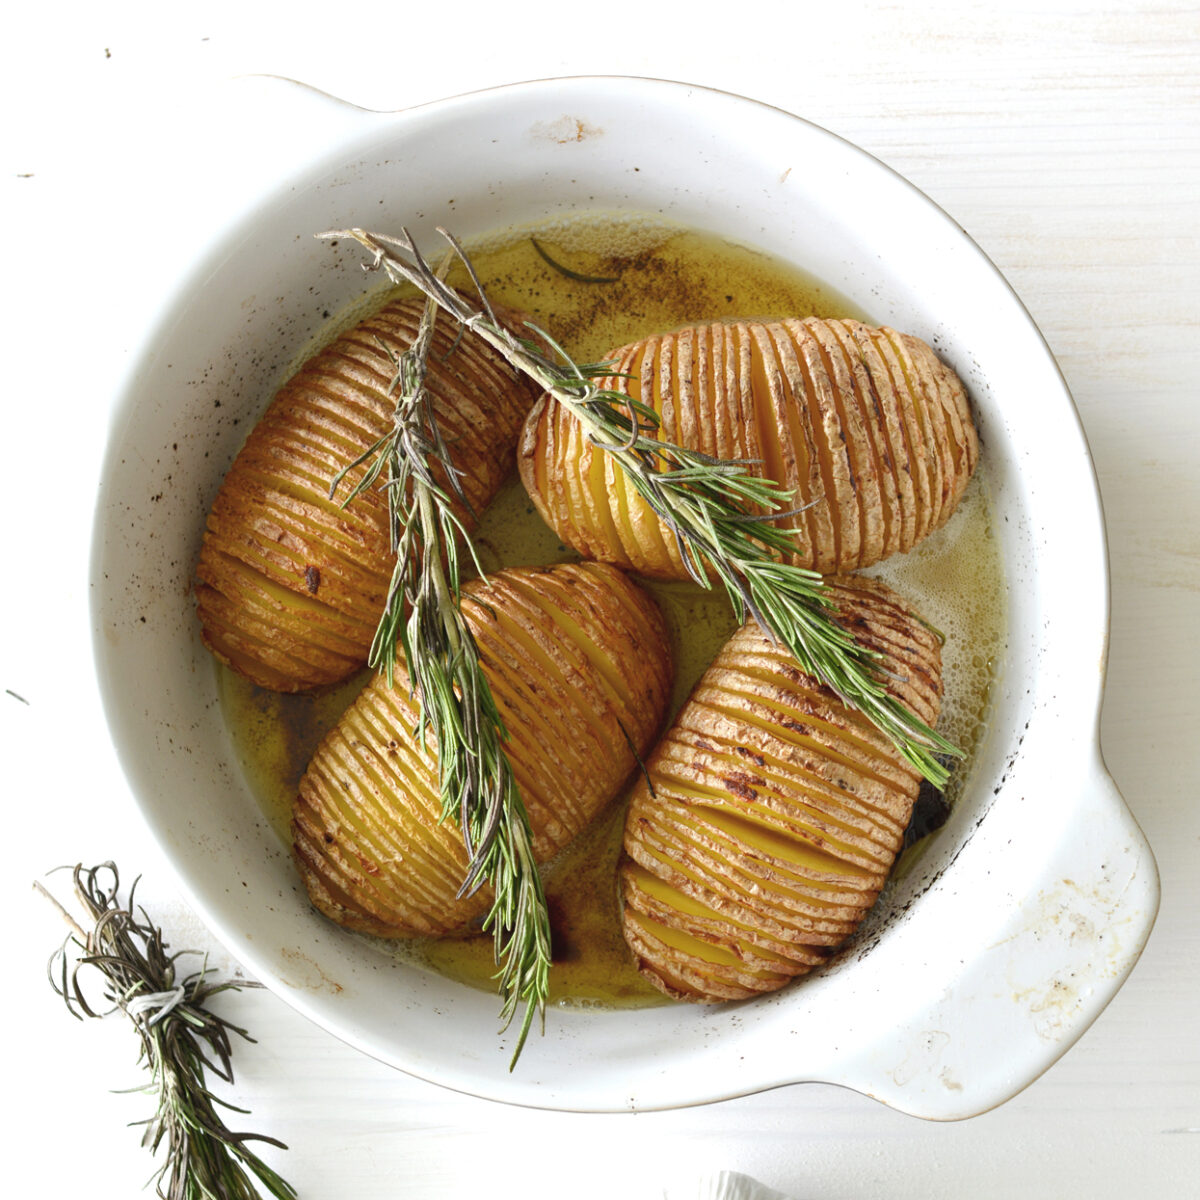 Garlic and Rosemary Hasselback Potatoes.